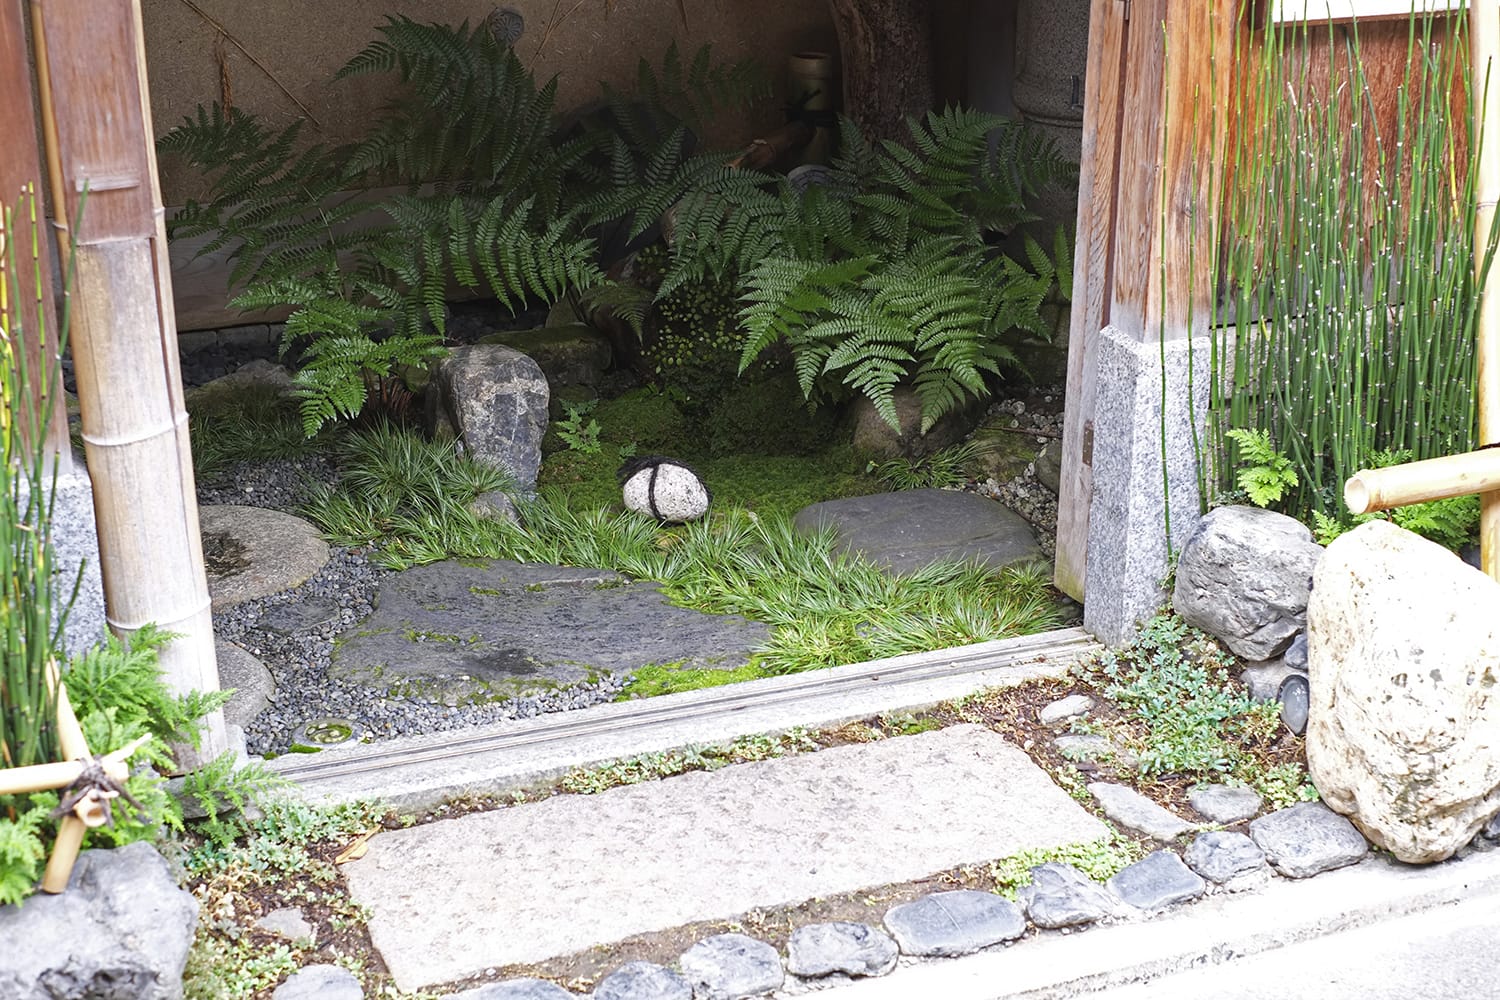 石塀小路の京料理竹中のイヌワラビと龍の髭と苔と石の渋い坪庭